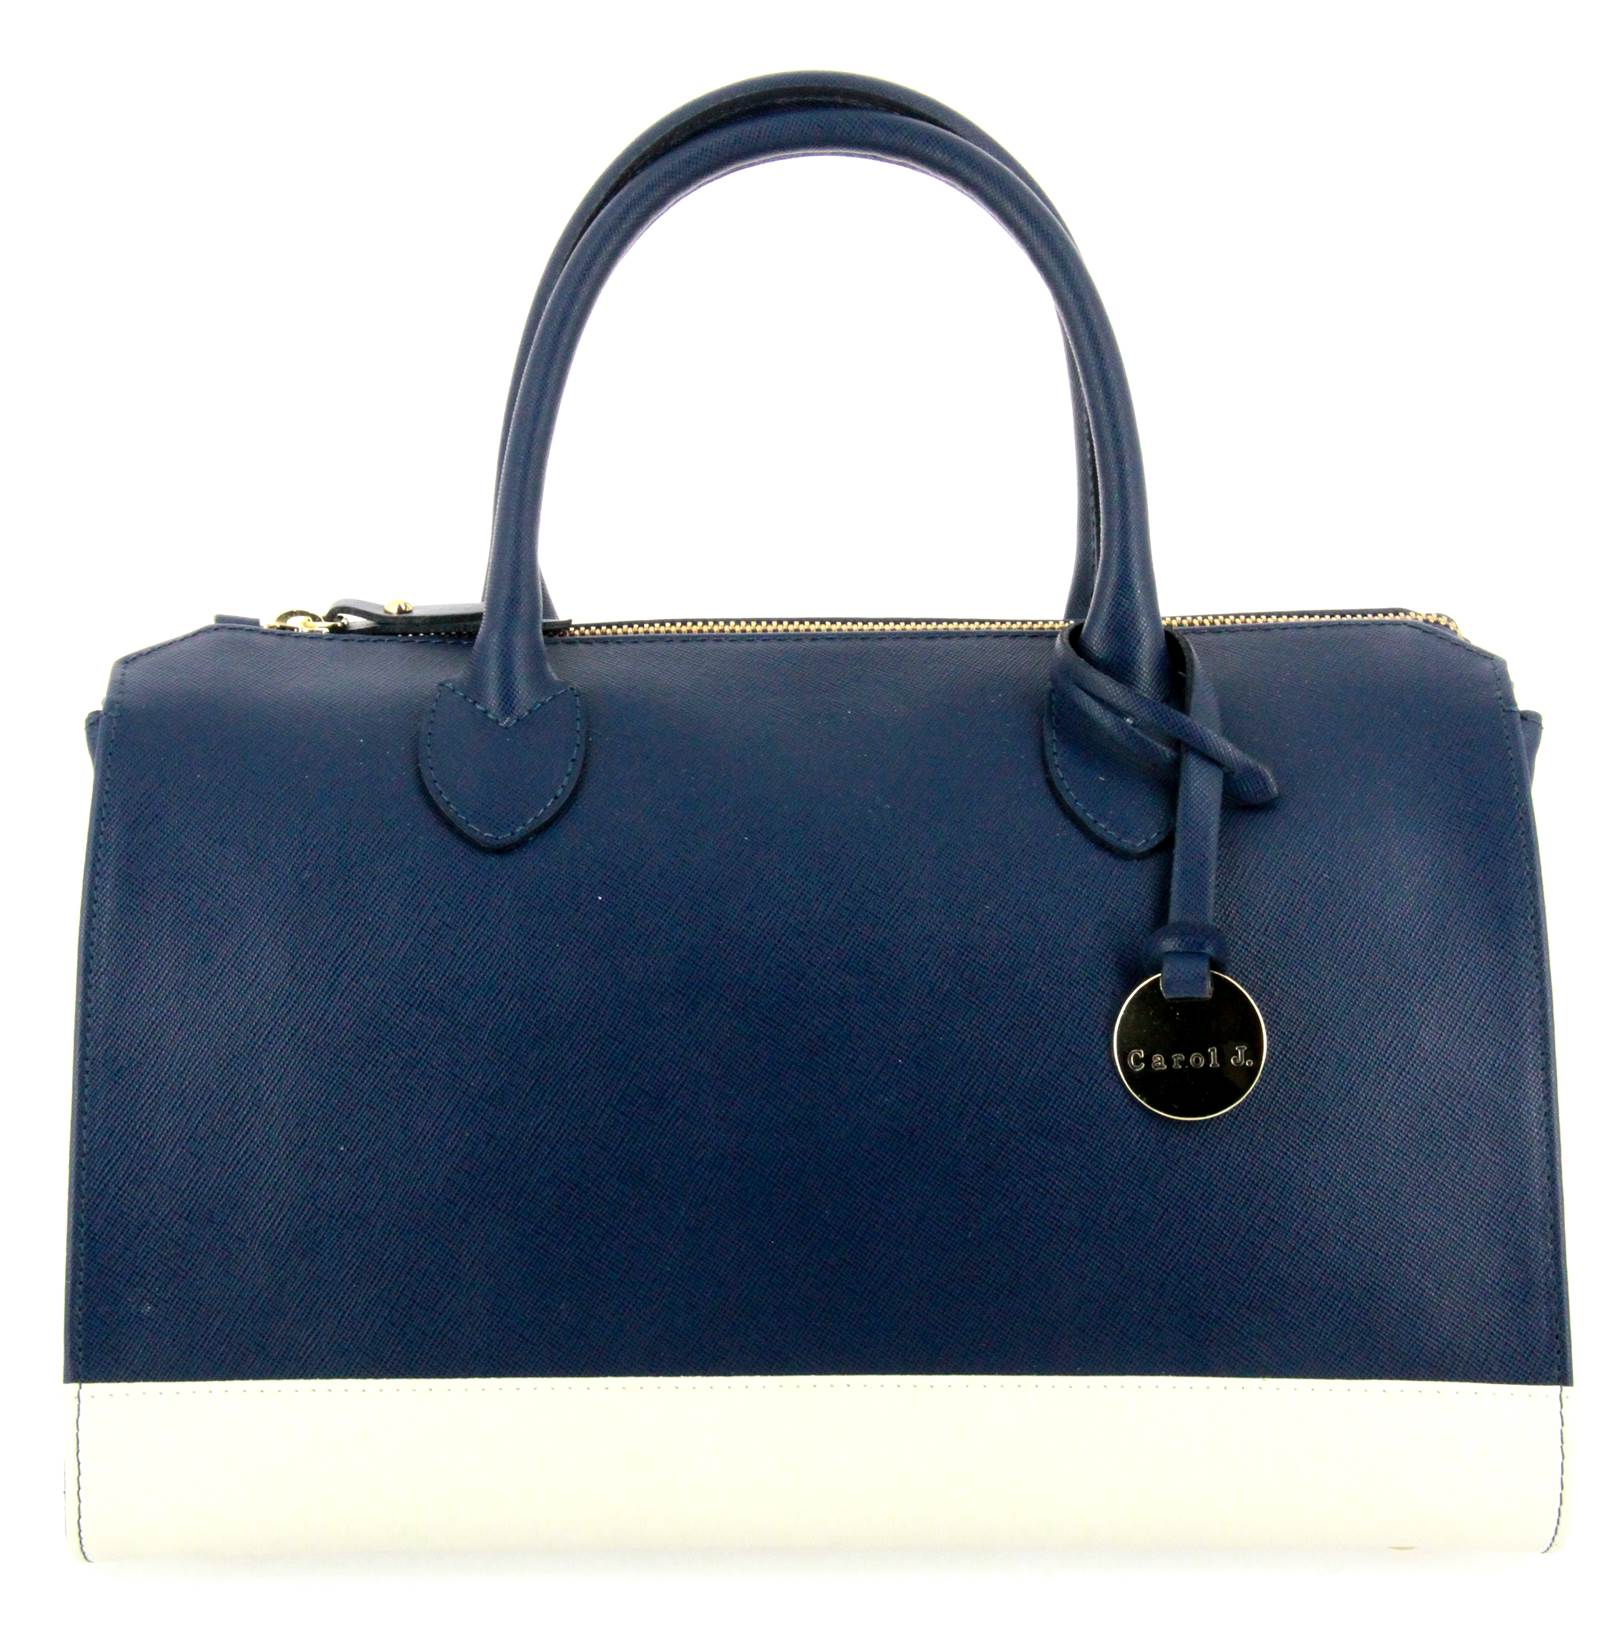 Carol J. handbag SAFFIANO BLUE BIANCO